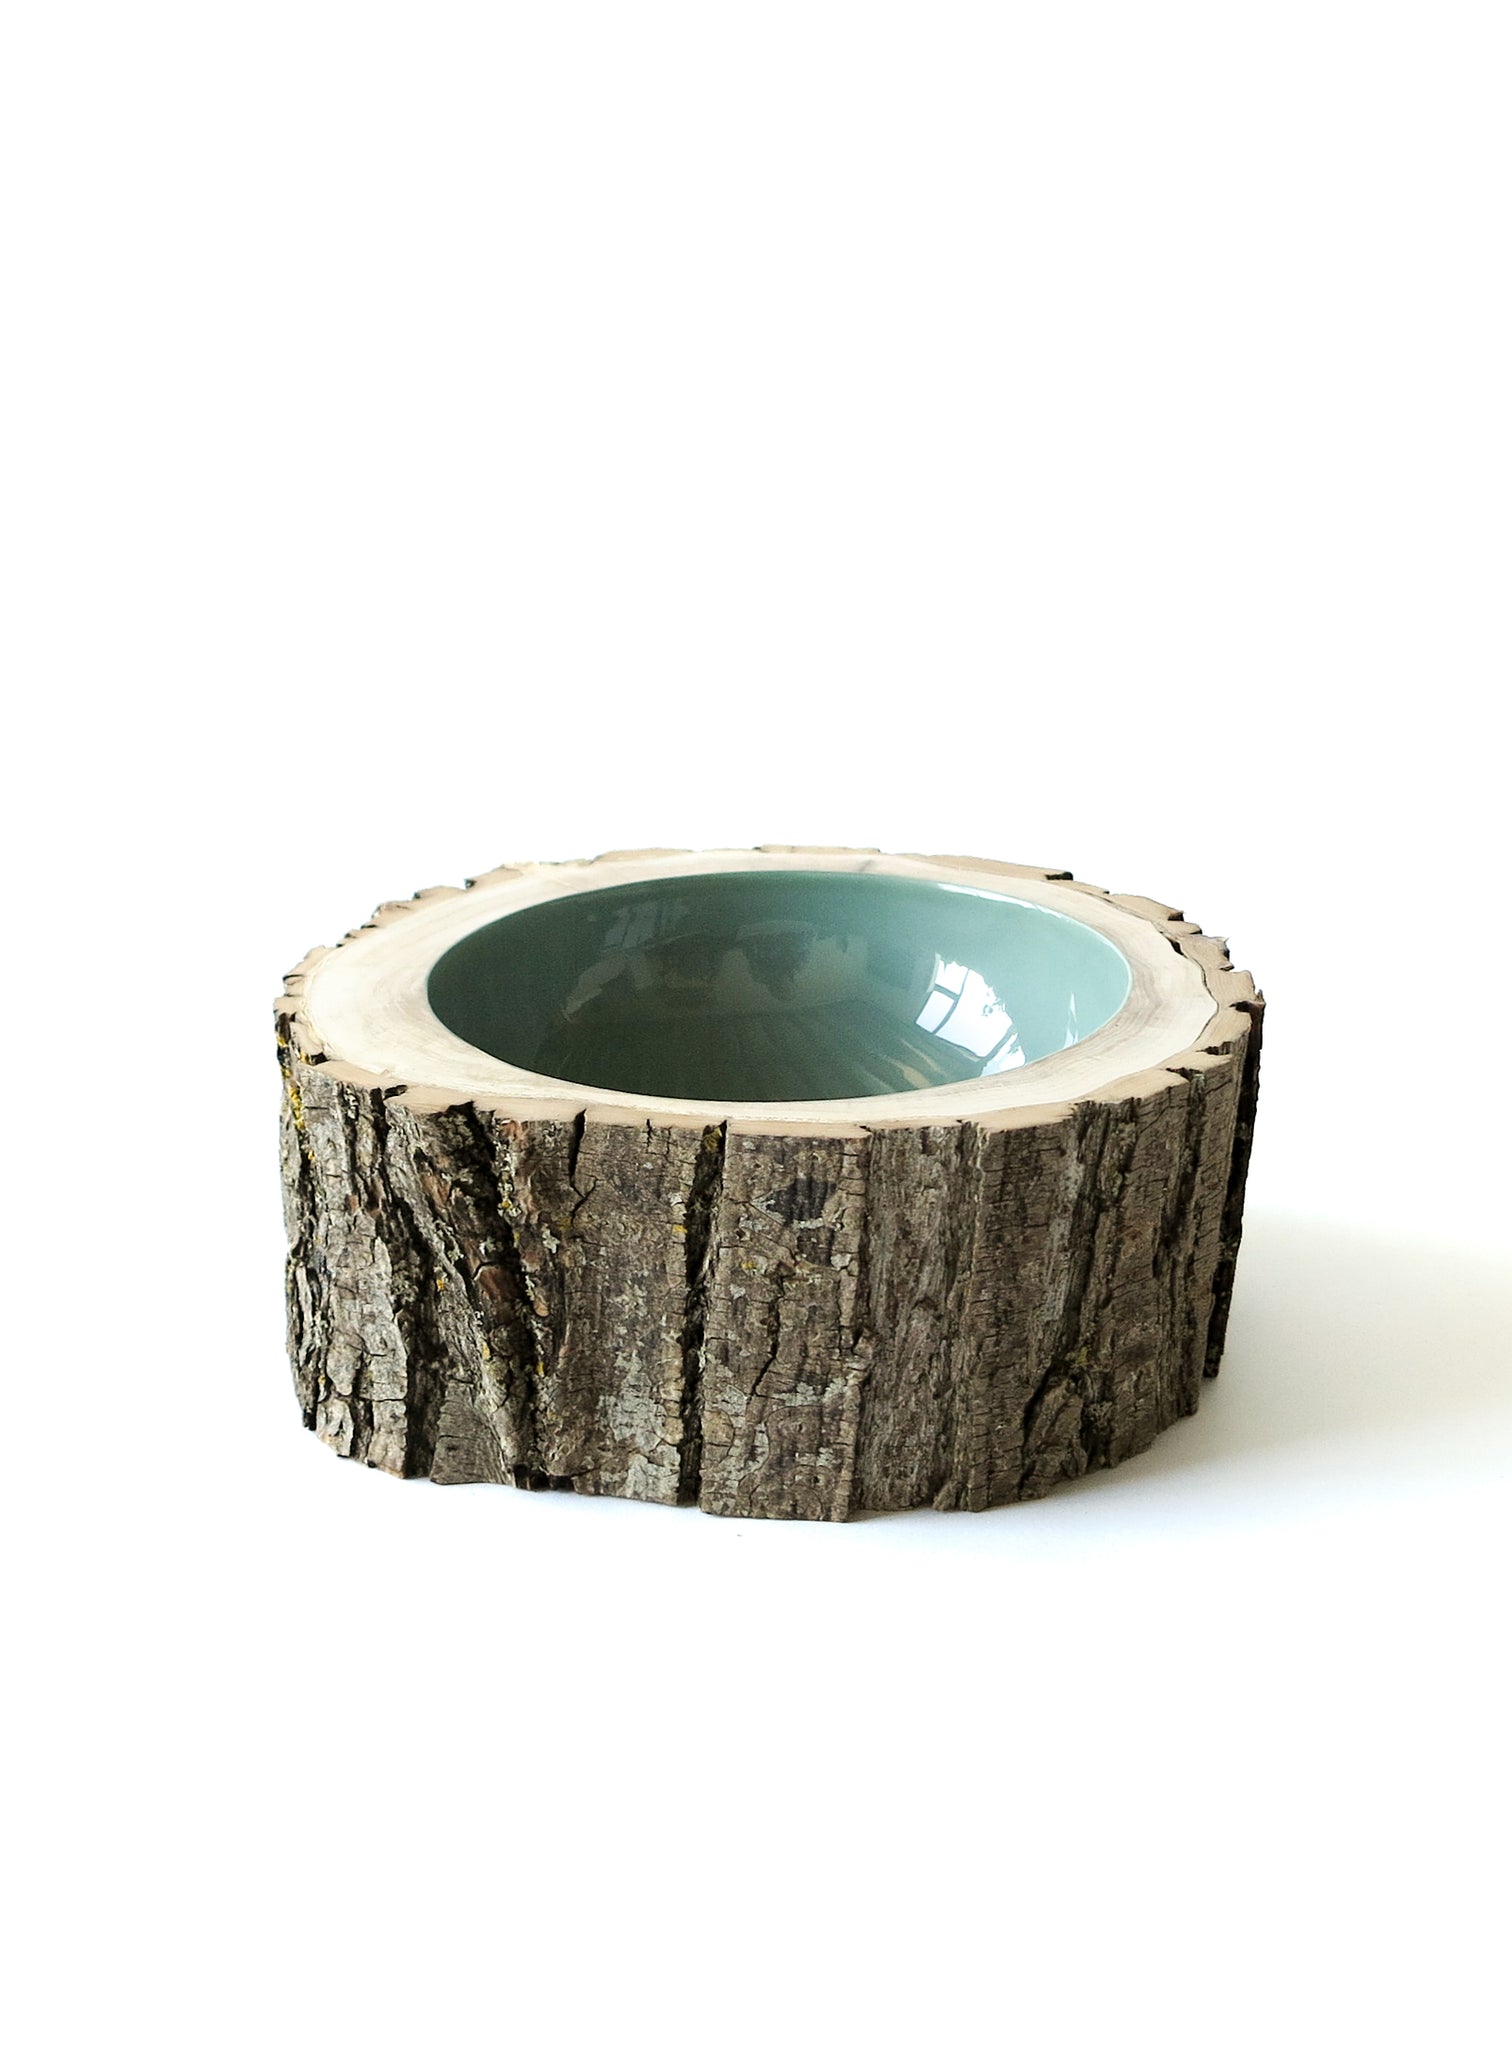 Log Bowl | Size 8 | Sage